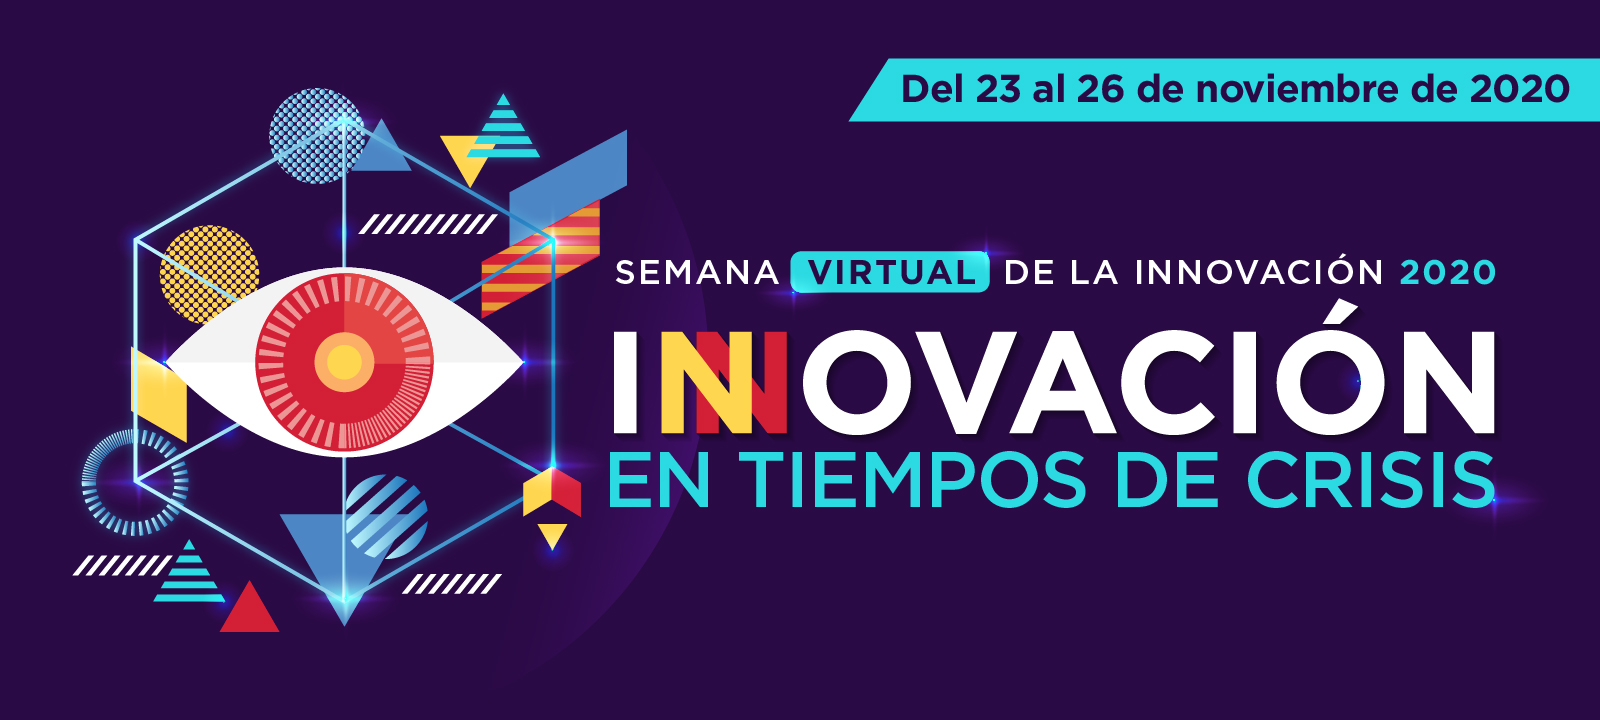 Semana Virtual de la Innovación 2020-2 de la Universidad de los Andes